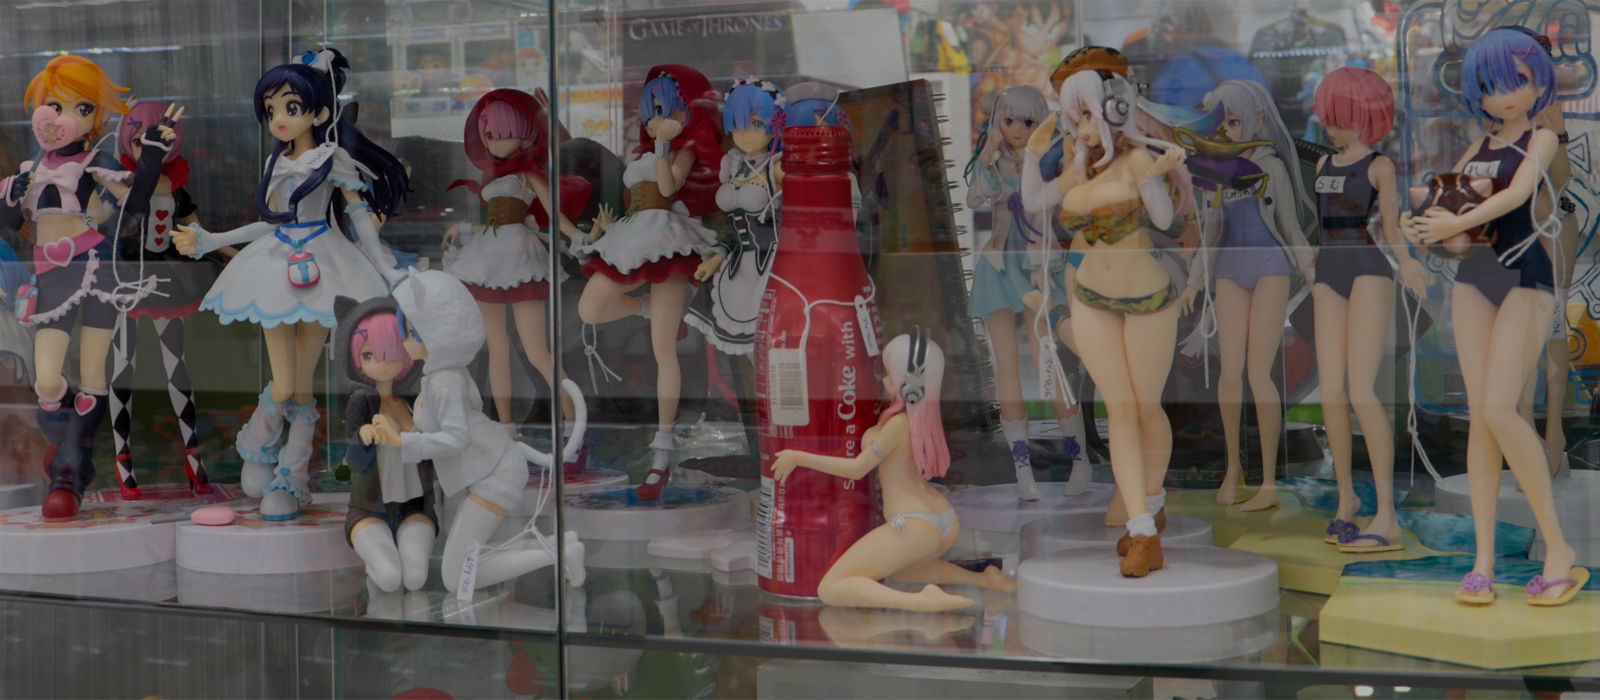 Kurogami | Anime figures, manga, merchandising and geek gifts